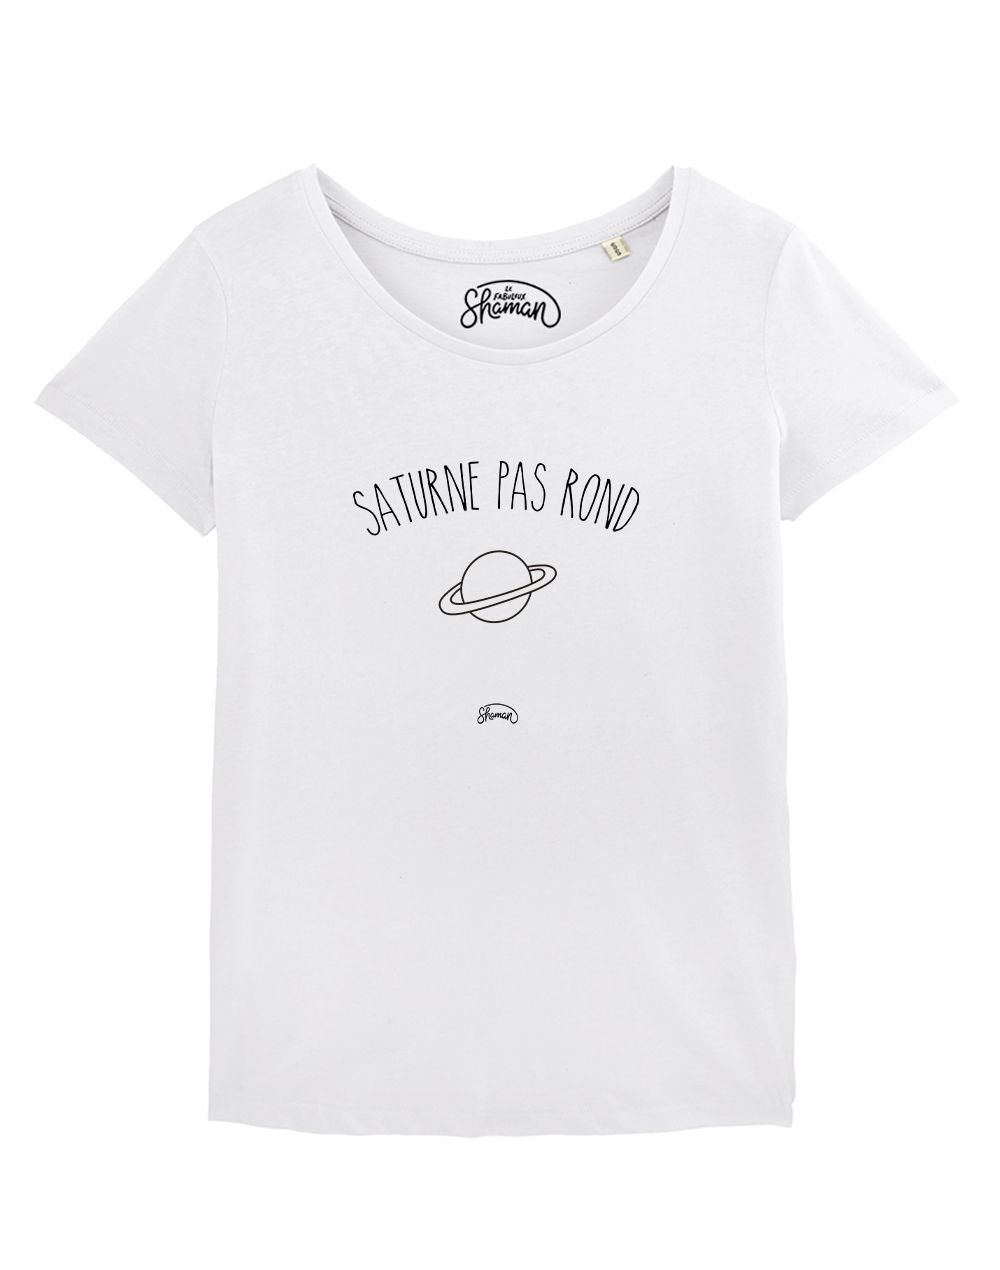 T-shirt "Saturne pas rond"